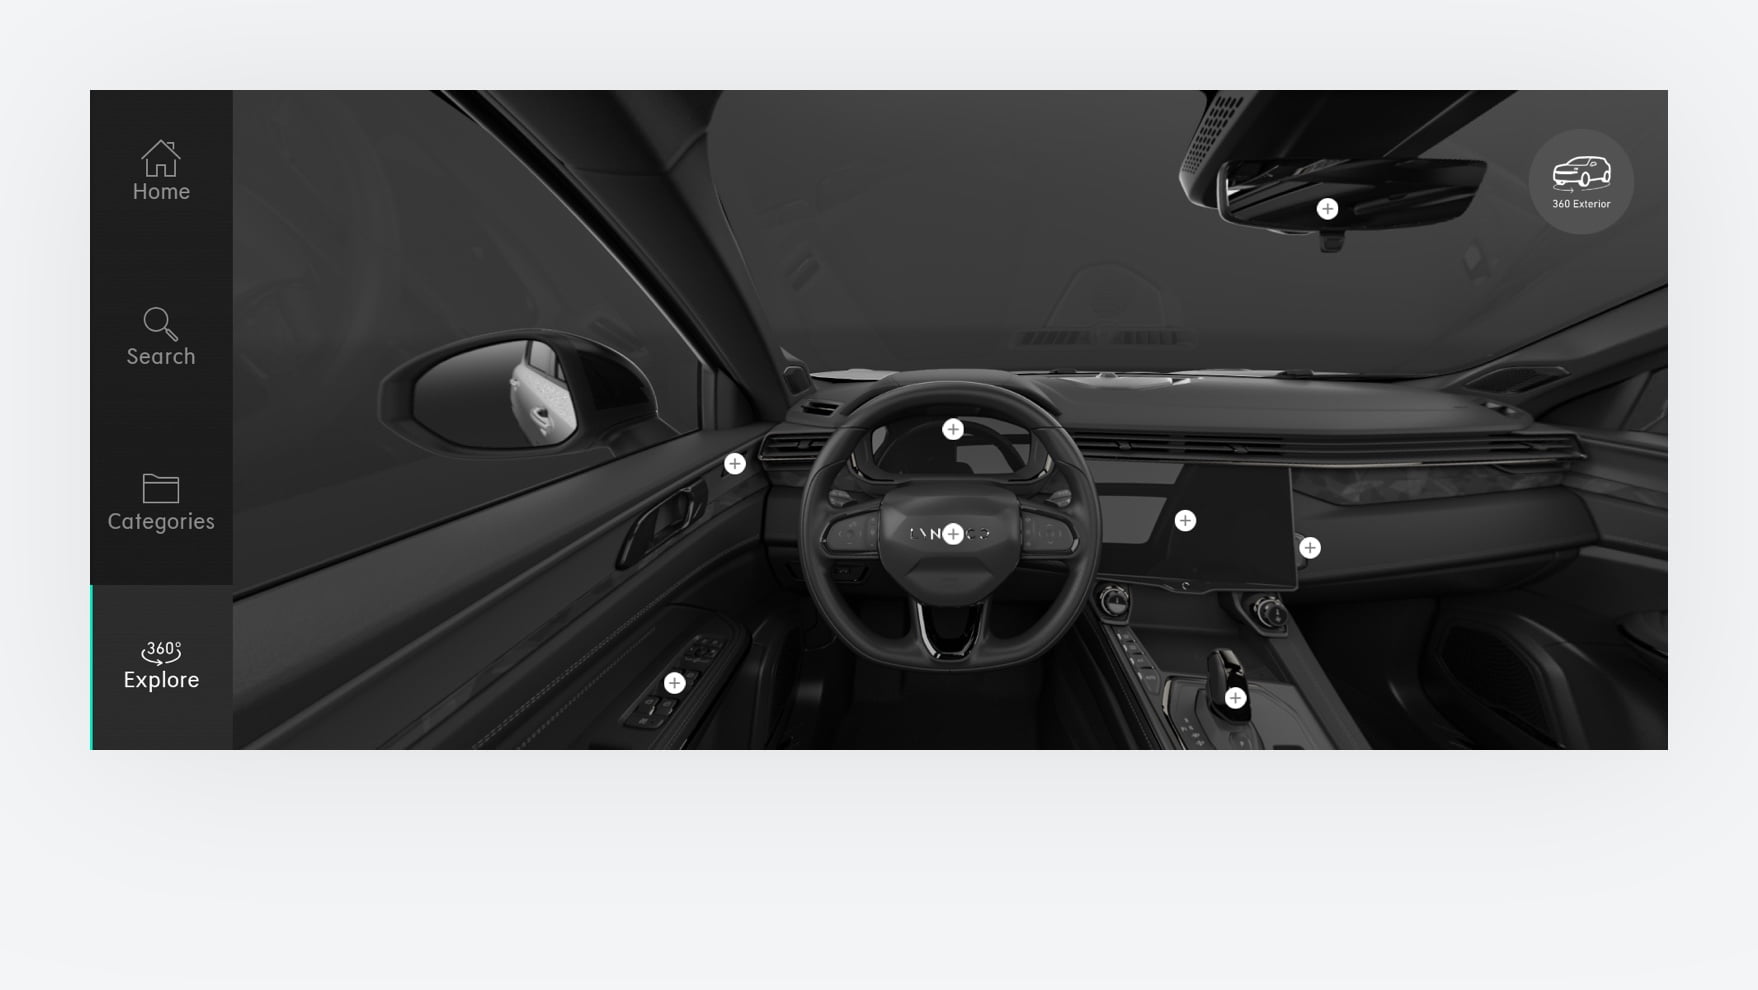 Interior & exterior 360° car views for better visual representation